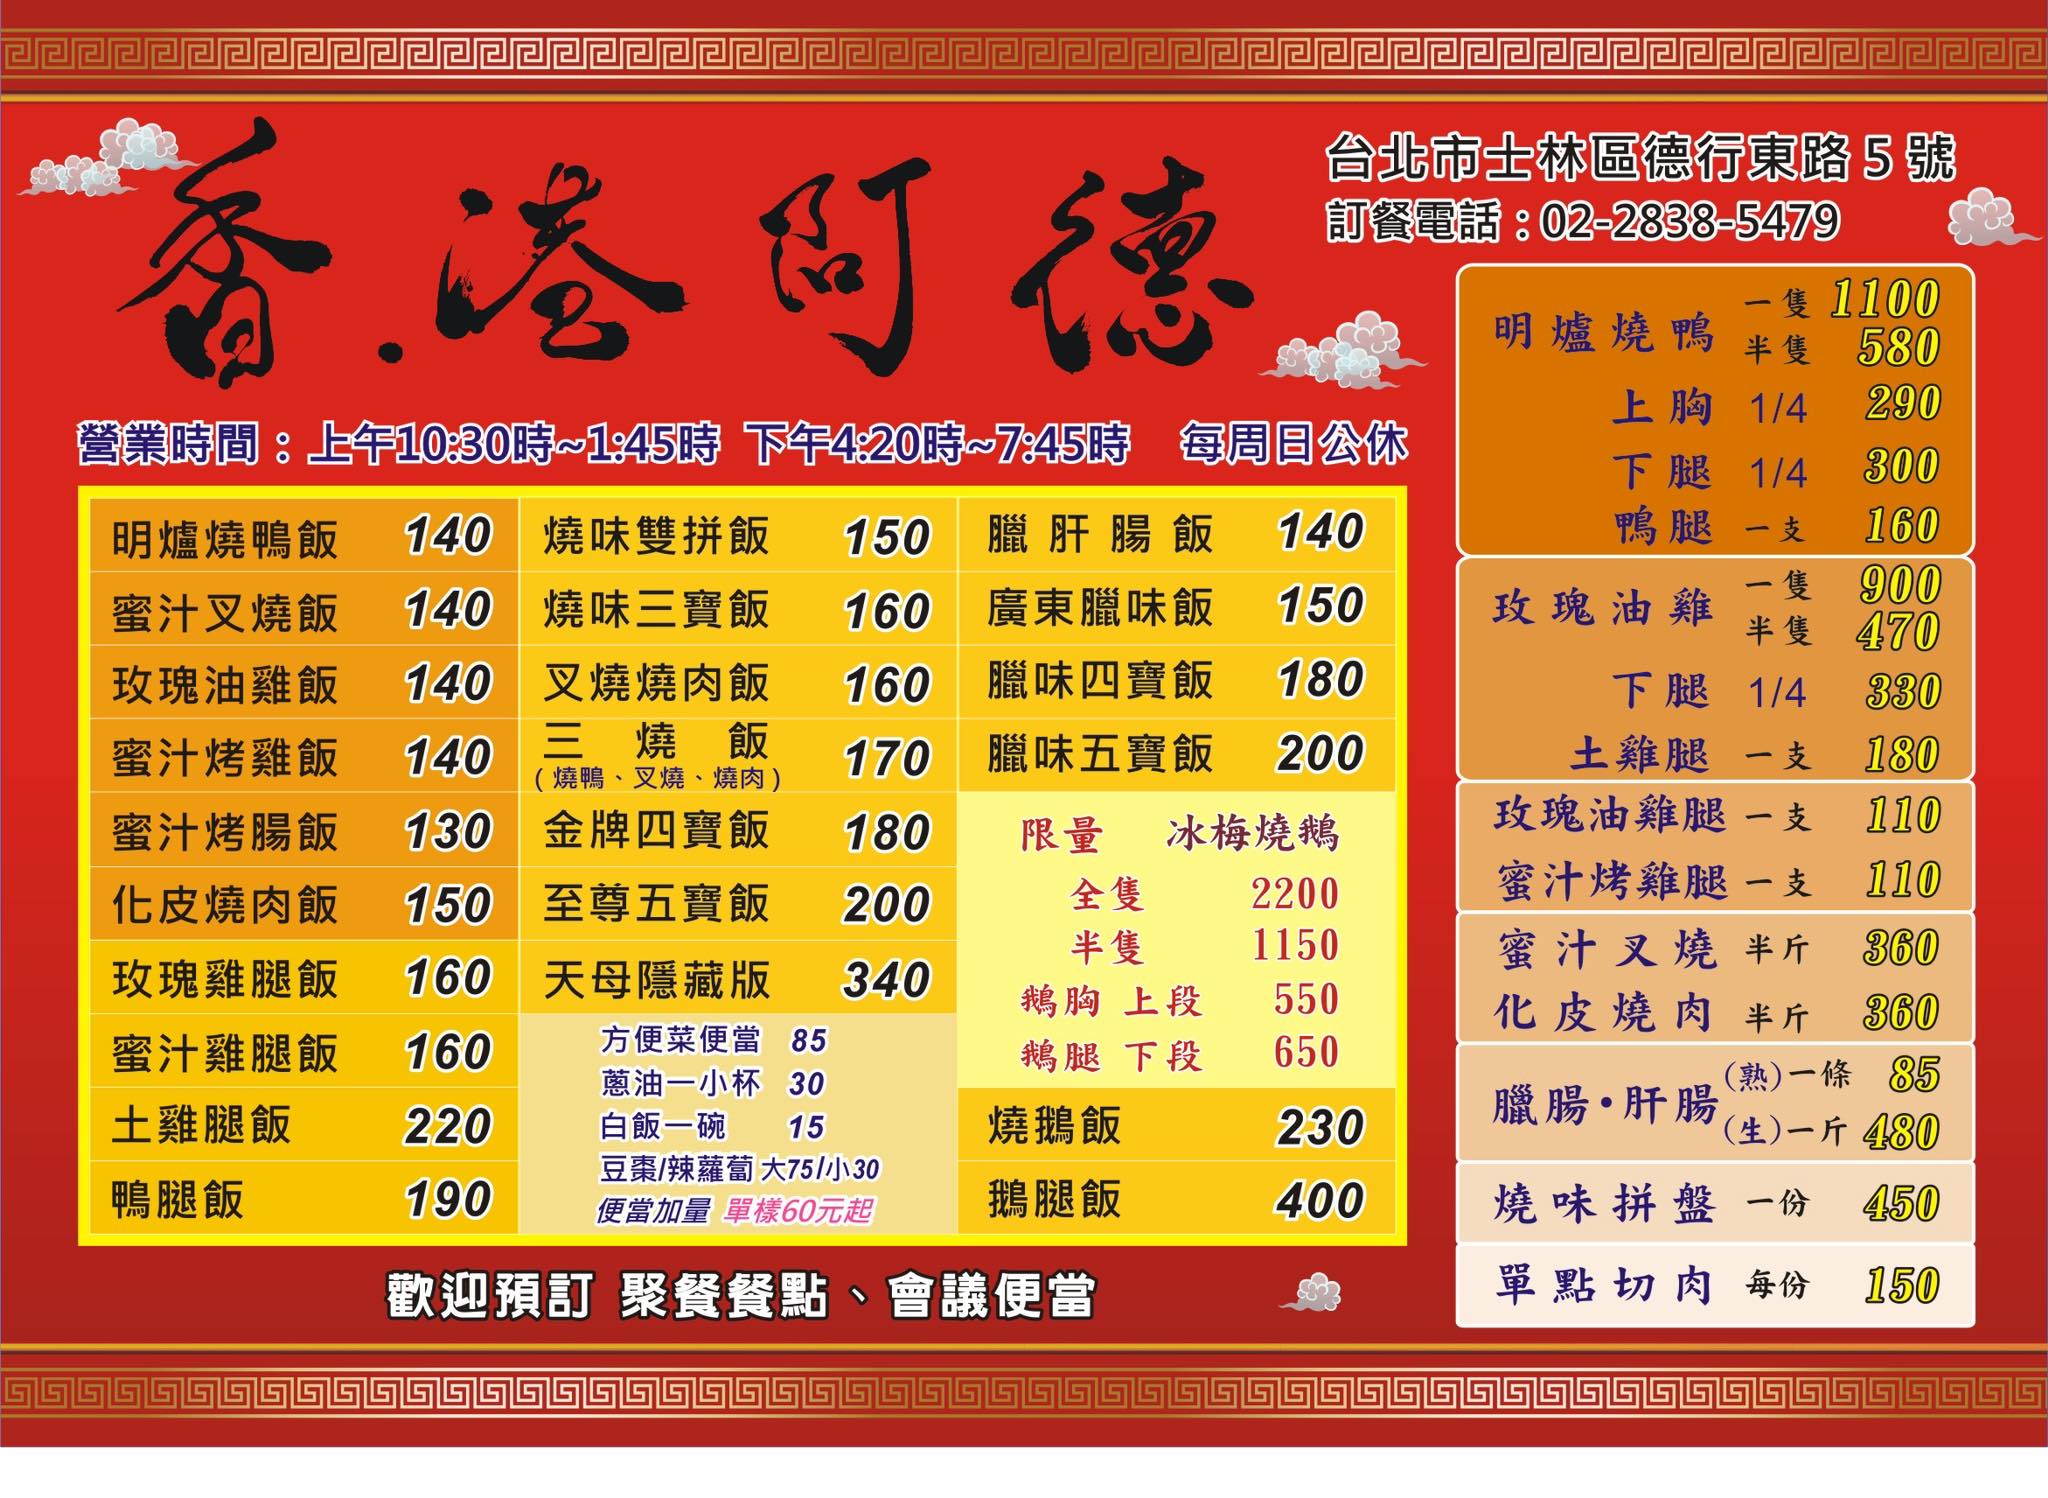 阿德燒臘,香港阿德燒臘快餐的菜單 @布雷克的出走旅行視界